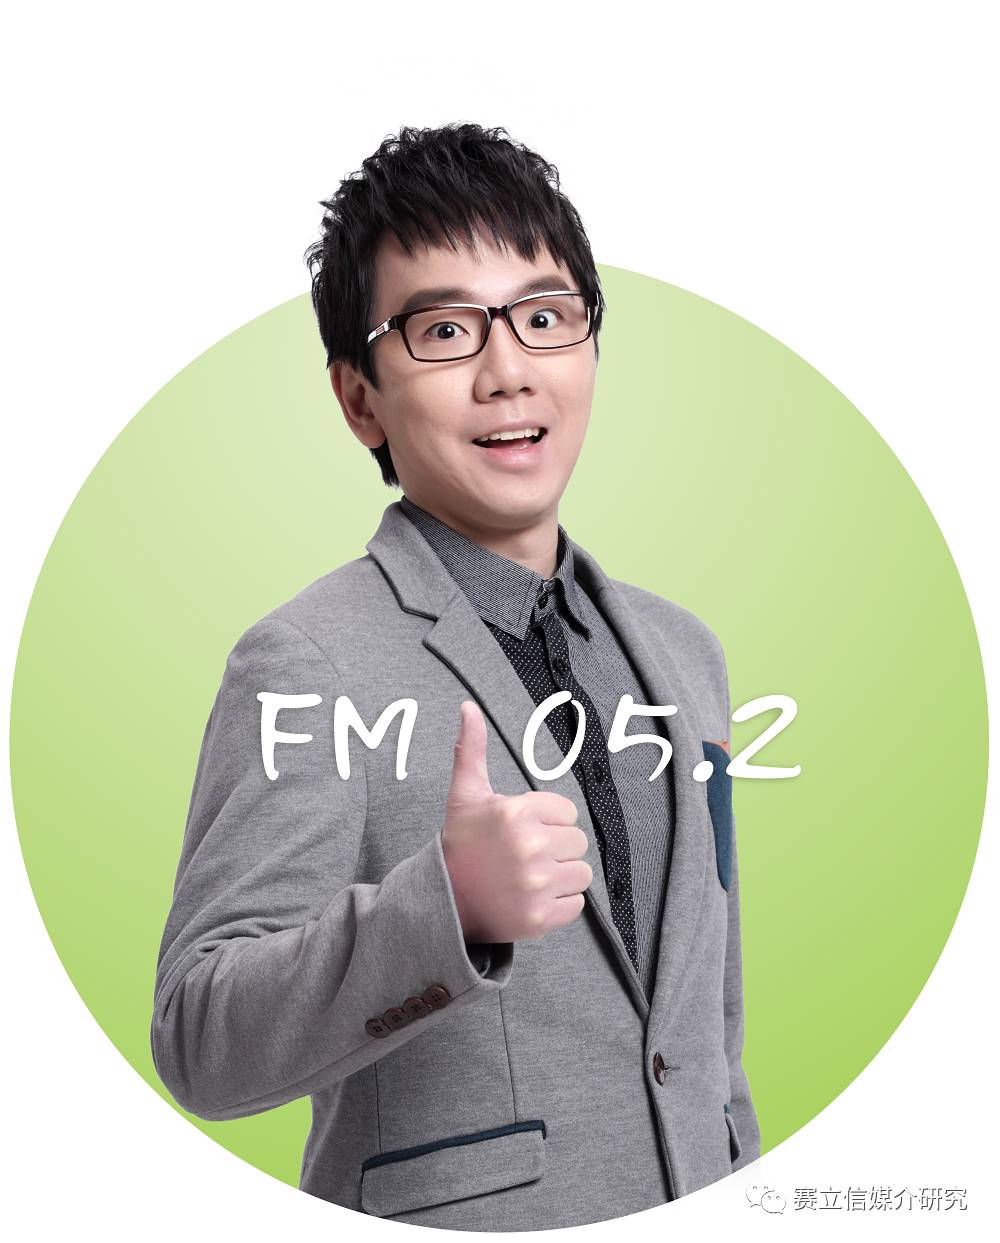 最快,最准,最权威的资讯,广东广播电视台羊城交通广播电台fm105